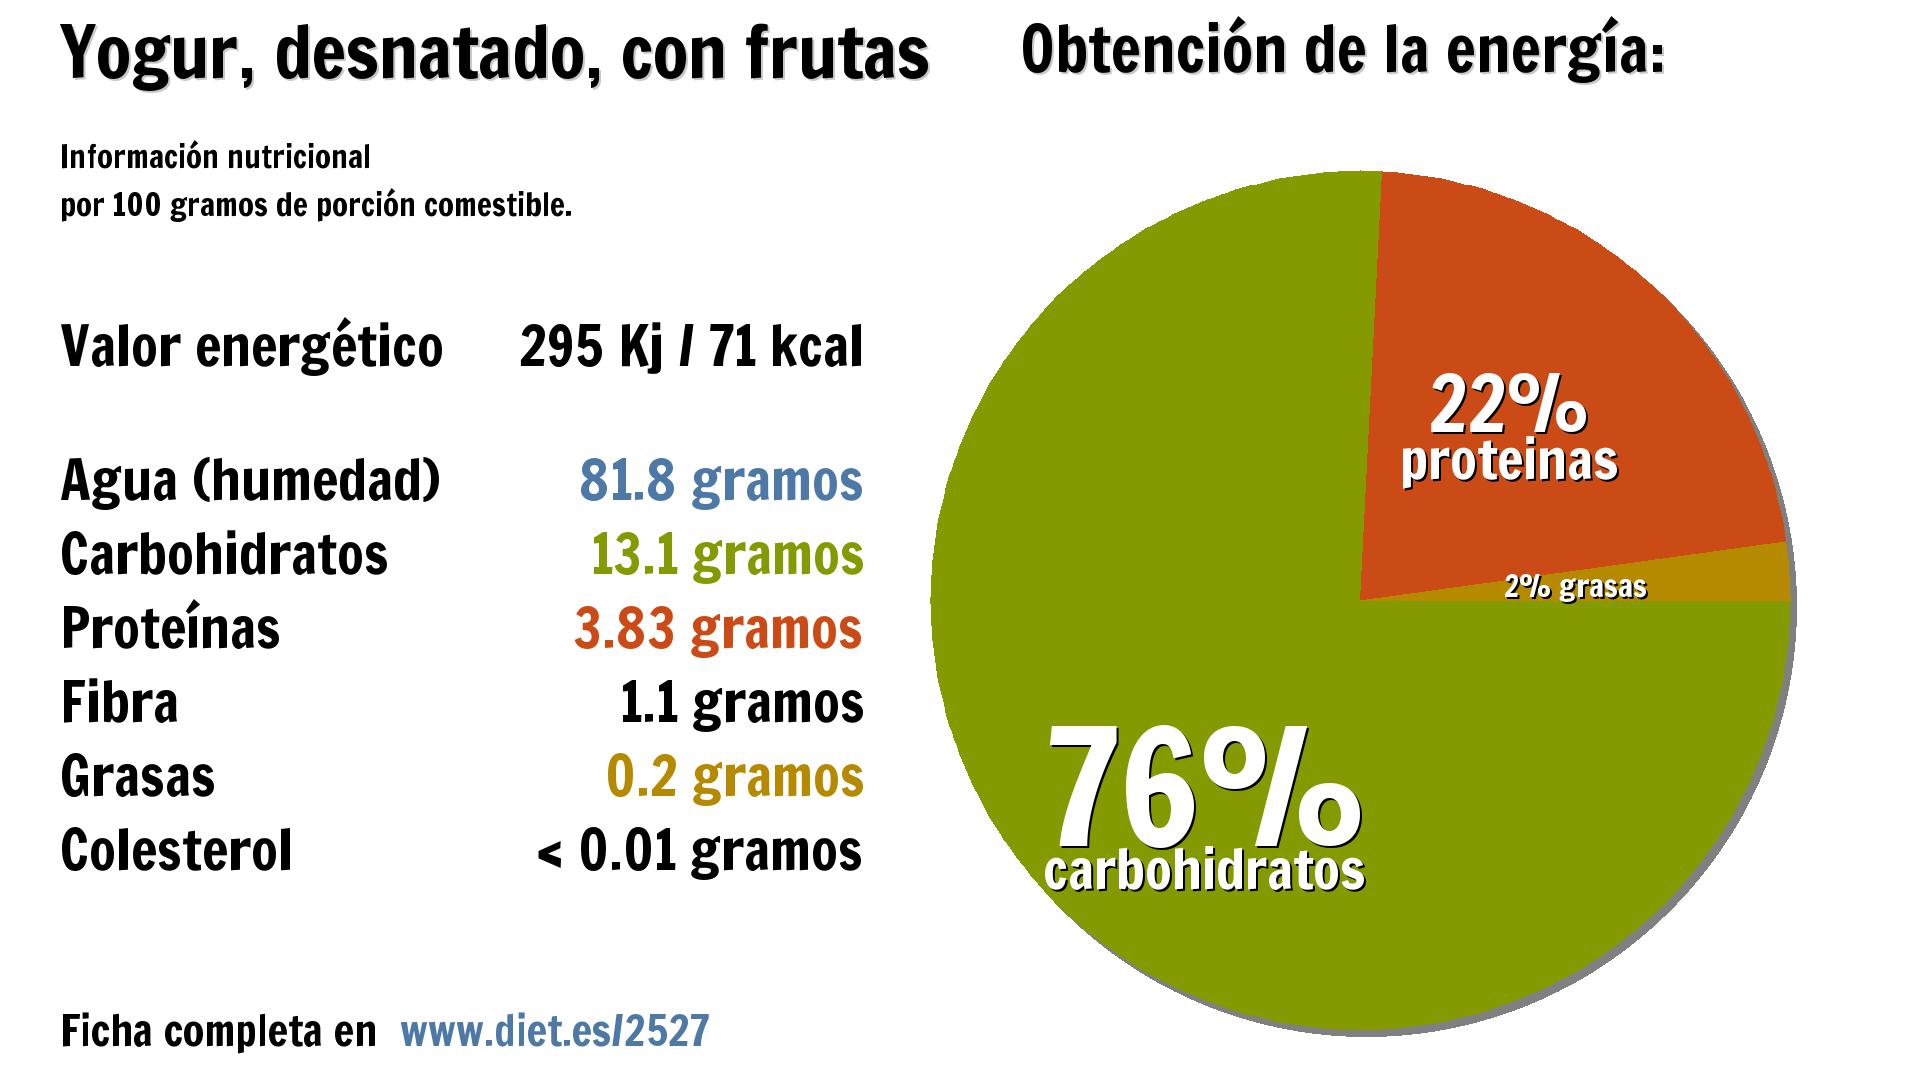 Yogur, desnatado, con frutas: energía 295 Kj, agua 82 g., carbohidratos 13 g., proteínas 4 g. y fibra 1 g.